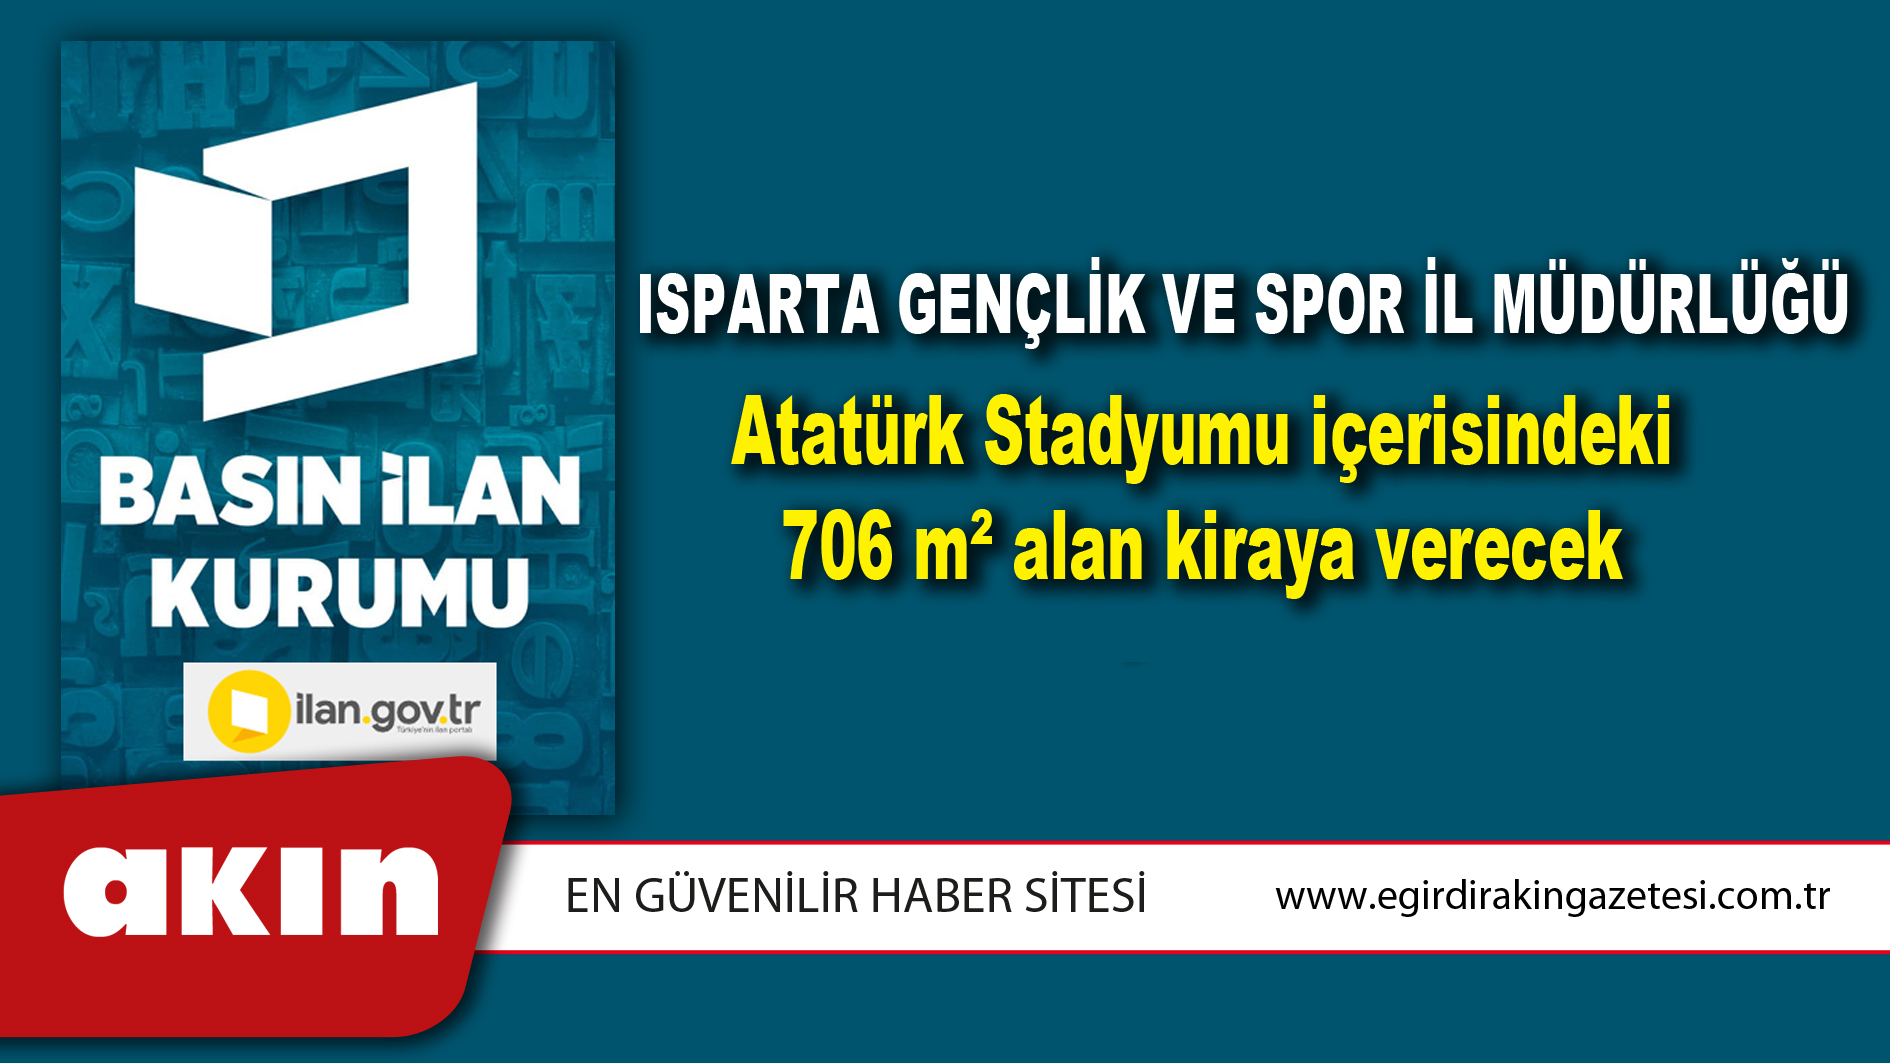 Isparta Gençlik Ve Spor İl Müdürlüğü Atatürk Stadyumu içerisindeki 706 m² alan kiraya verecek